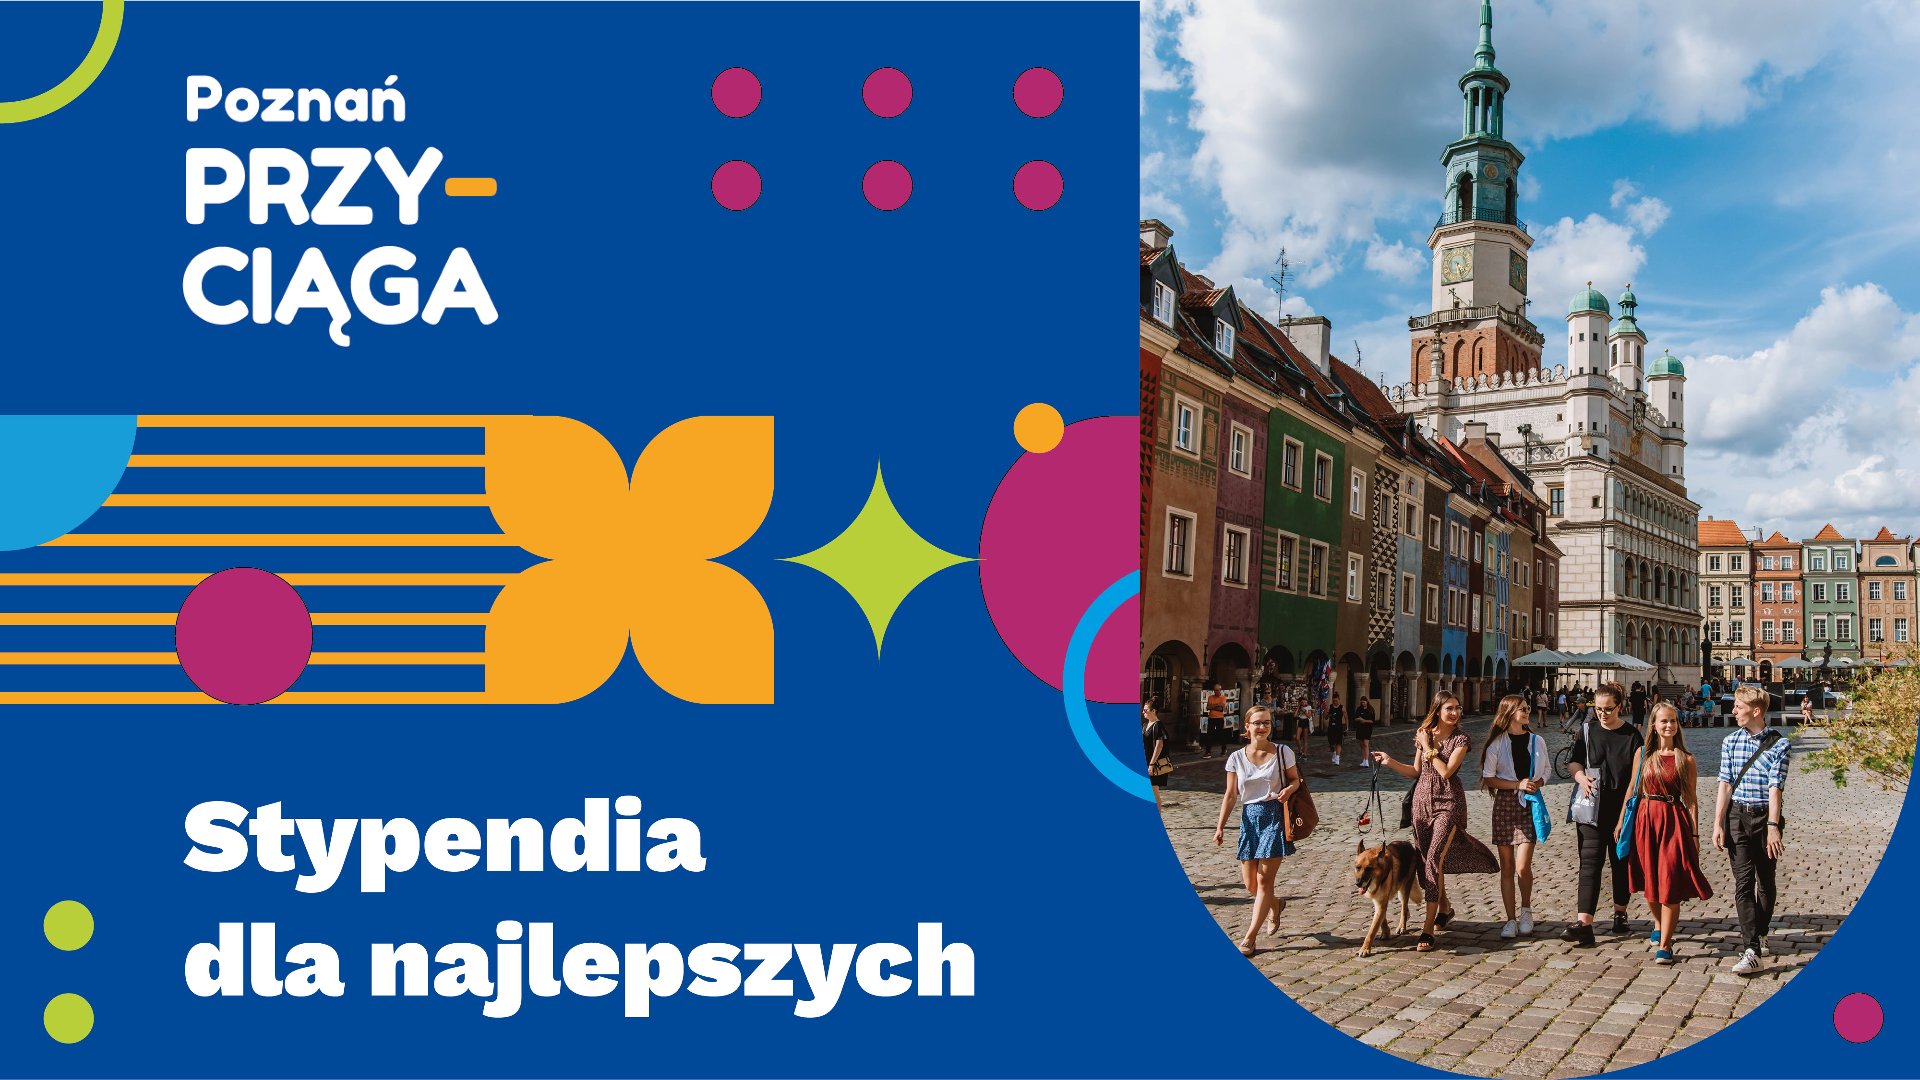 Grafika przedstawia zdjęcie starego rynku Poznania, po którym spacerują ludzie oraz hasło akcji. - grafika artykułu